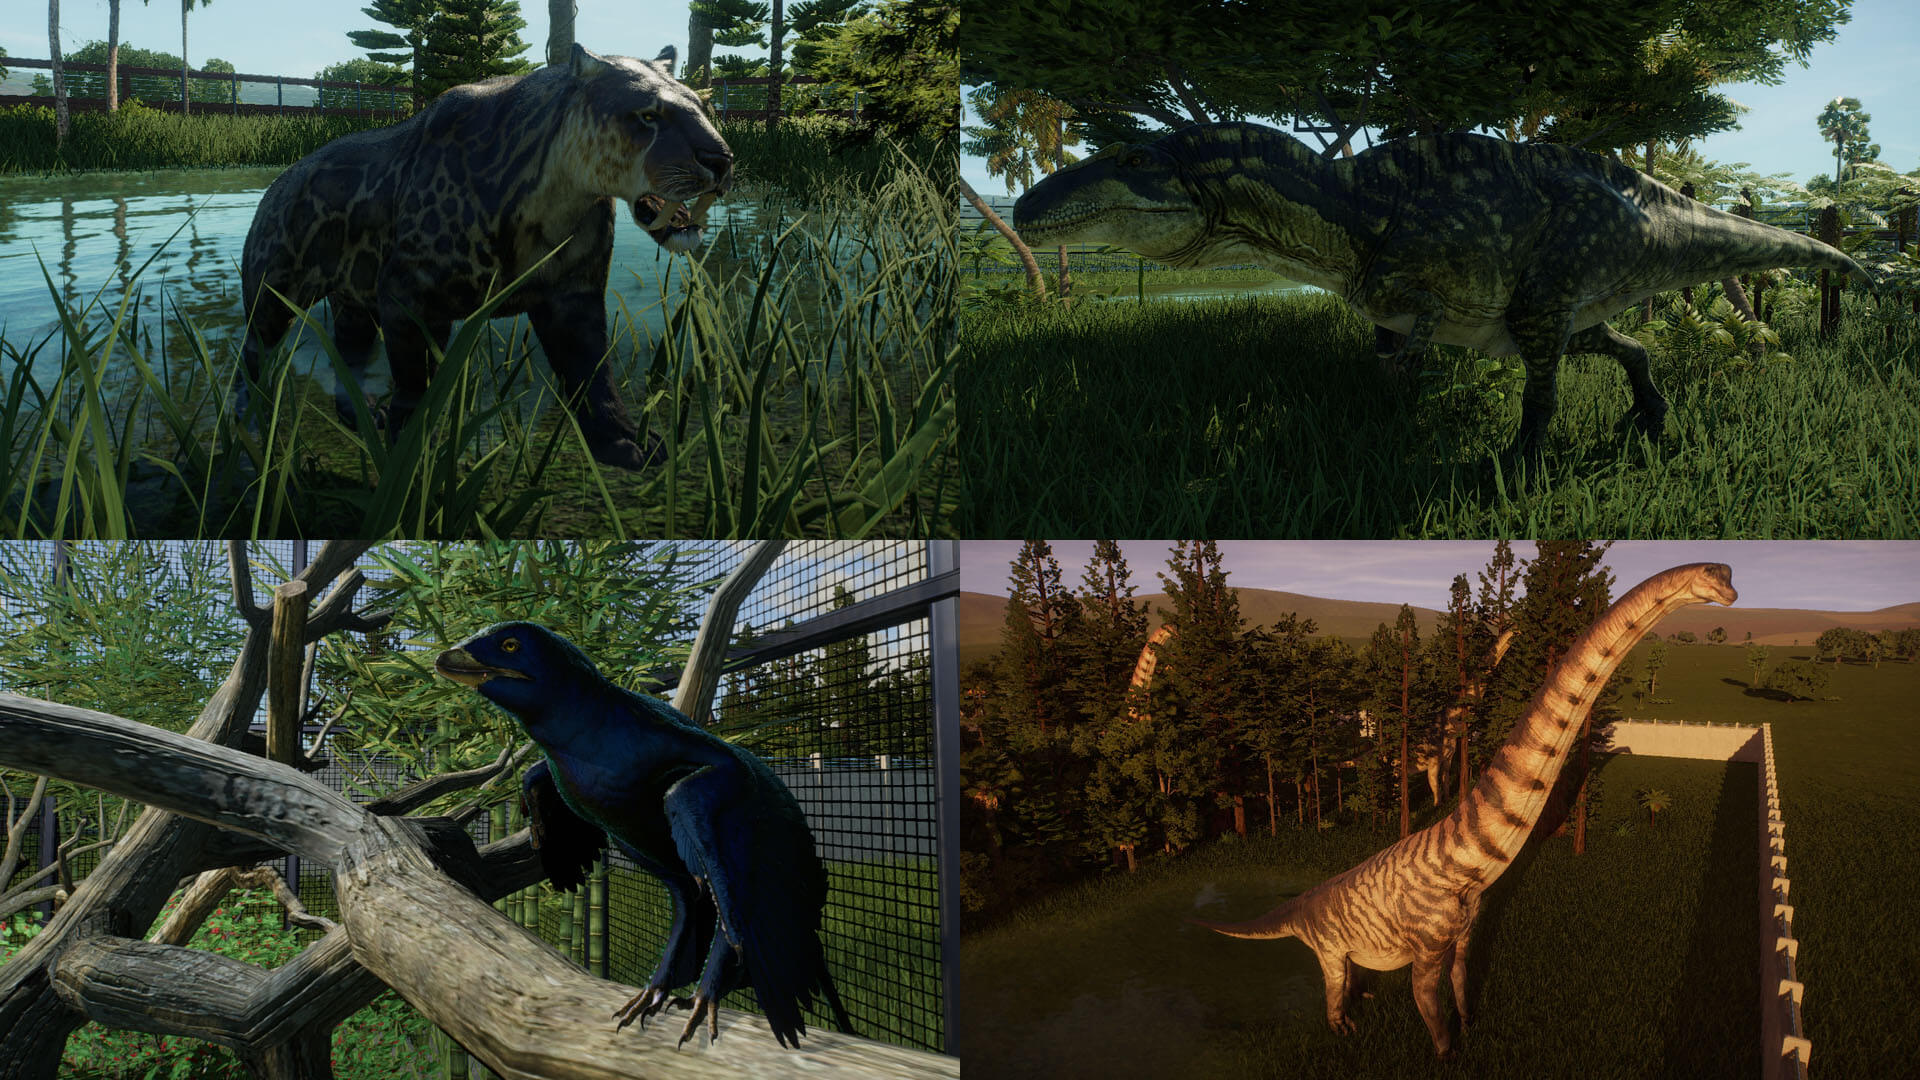 Keturi priešistorinės karalystės gyvūnai – smilodonas, acrocanthosaurus, microraptor ir brachiosaurus